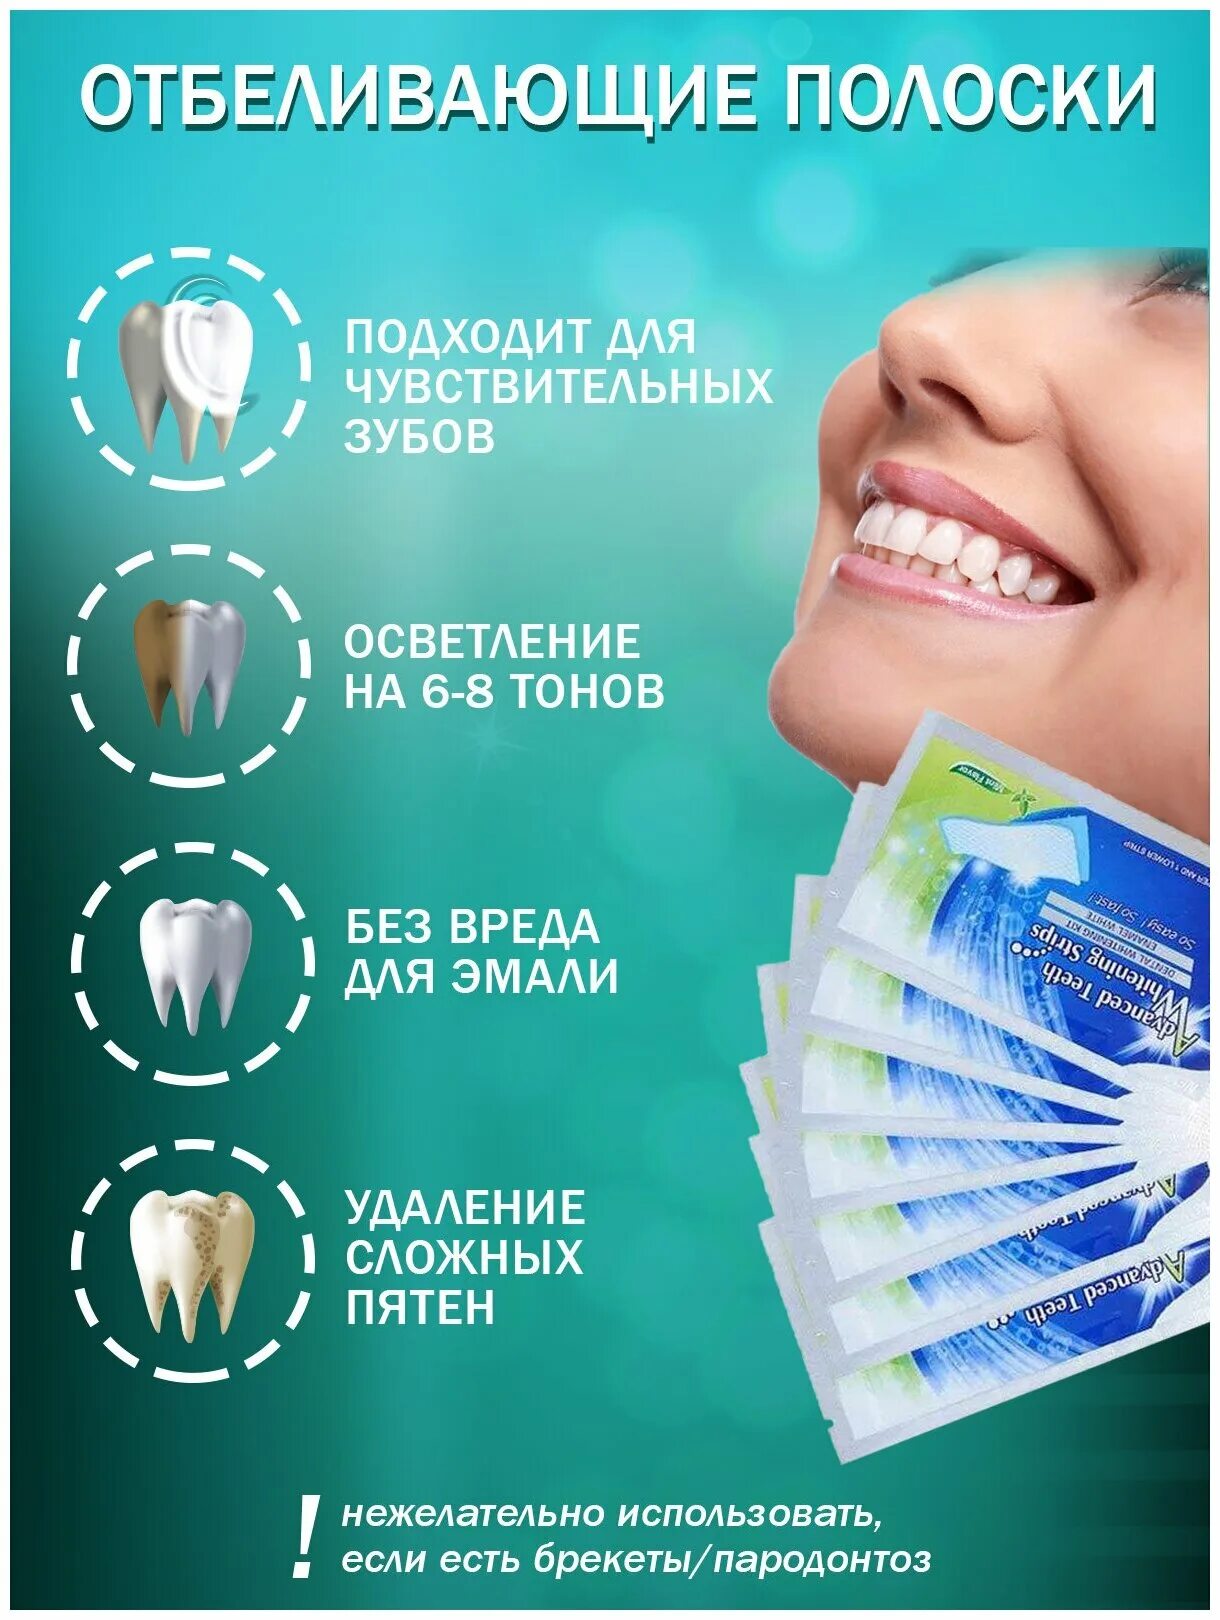 Отбеливание зубов отзывы цены. Отбеливающие полоски для зубов. Полоски для отбеливания. Уровни отбеливания зубов. Отбеливающие полоски для зубов инструкция.